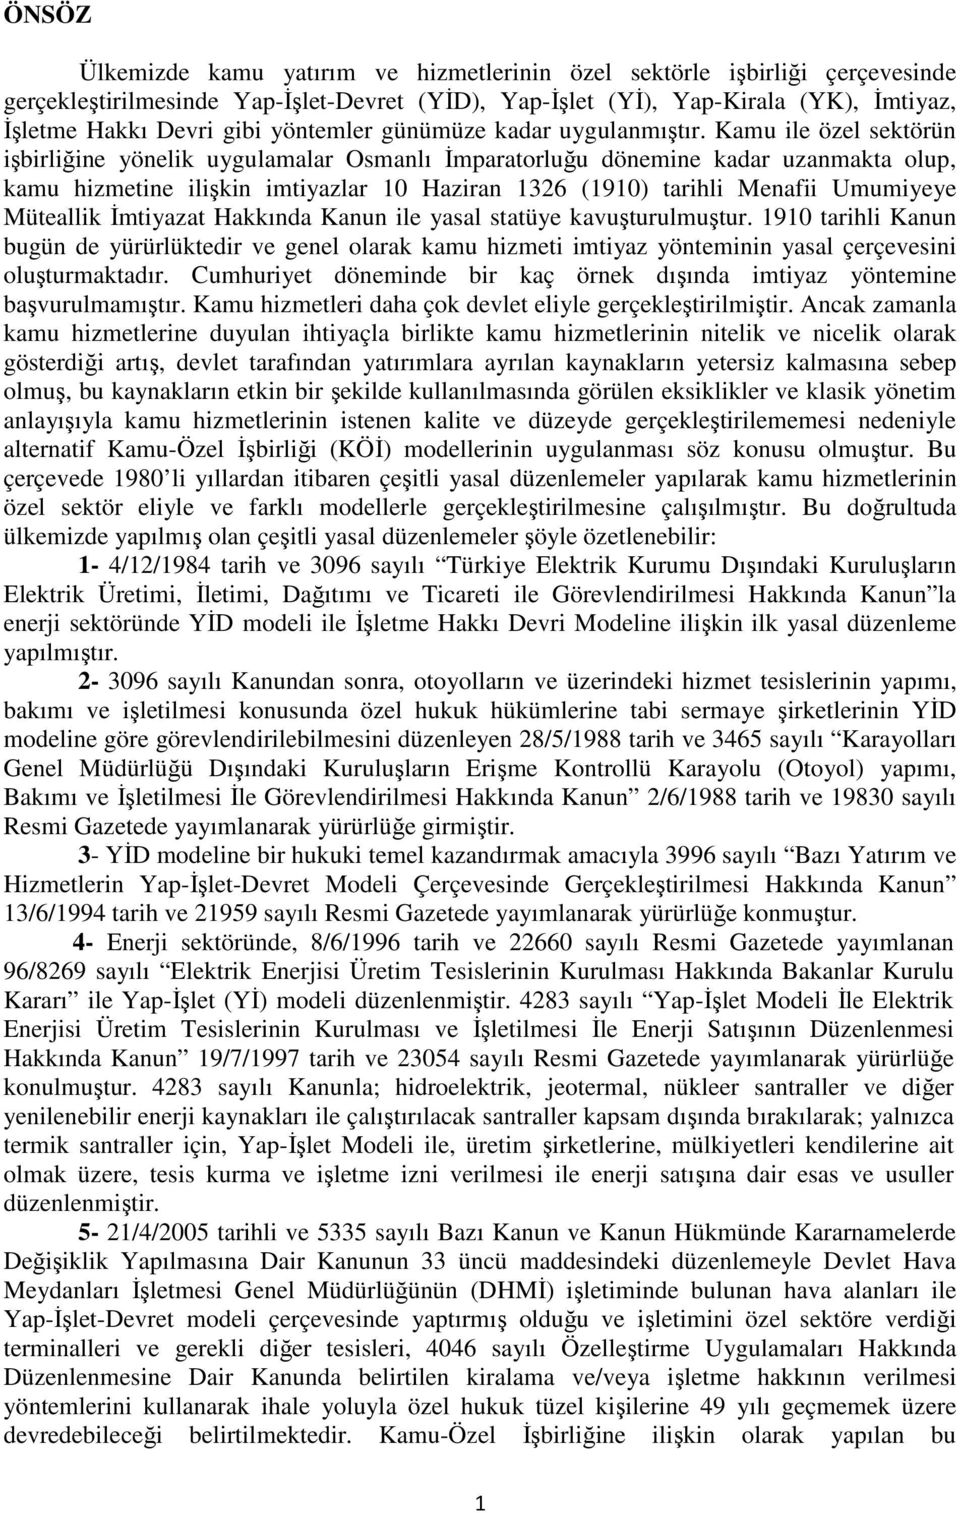 Kamu ile özel sektörün işbirliğine yönelik uygulamalar Osmanlı İmparatorluğu dönemine kadar uzanmakta olup, kamu hizmetine ilişkin imtiyazlar 10 Haziran 1326 (1910) tarihli Menafii Umumiyeye